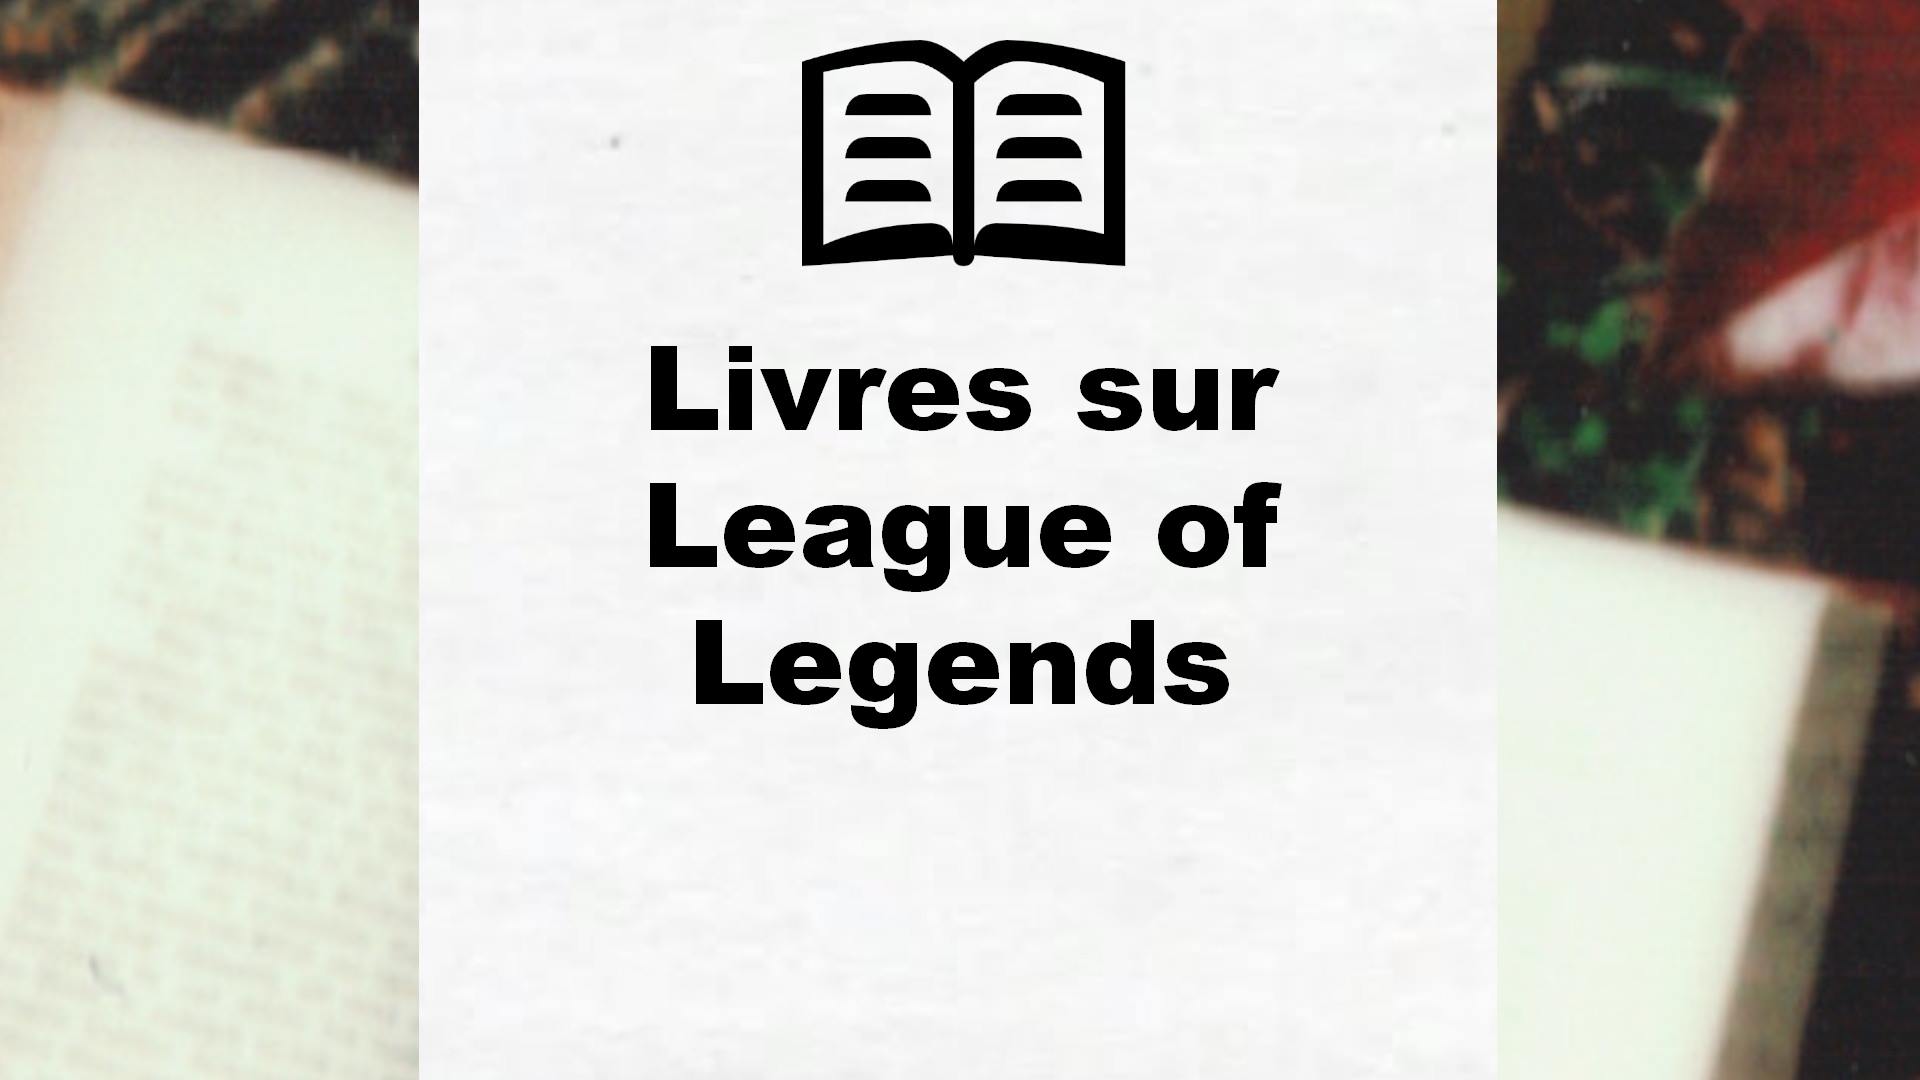 Livres sur League of Legends